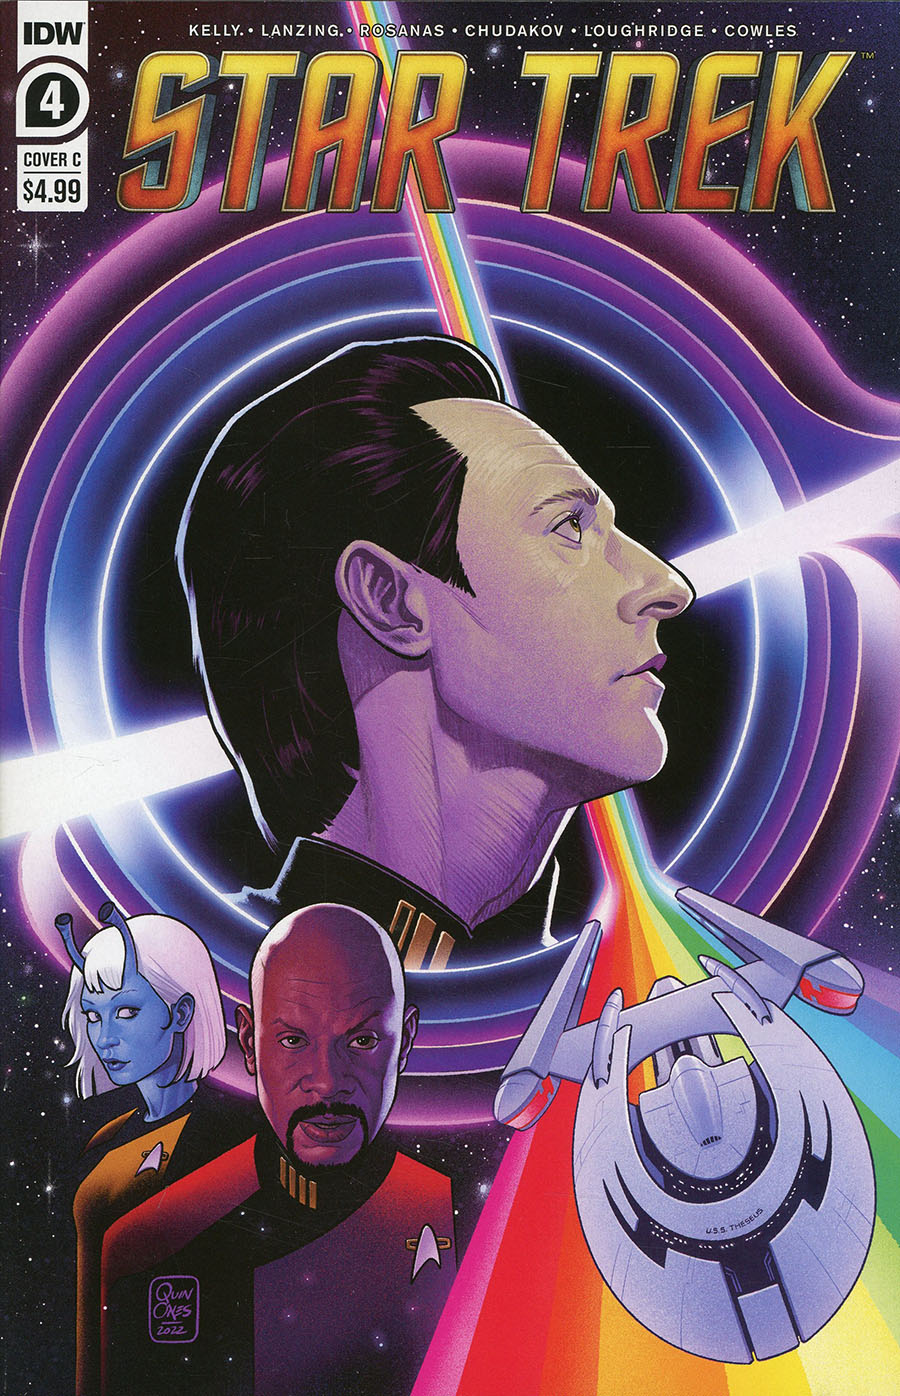 Star Trek (IDW) Vol 2 #4 Cover C Variant Joe Quinones Cover